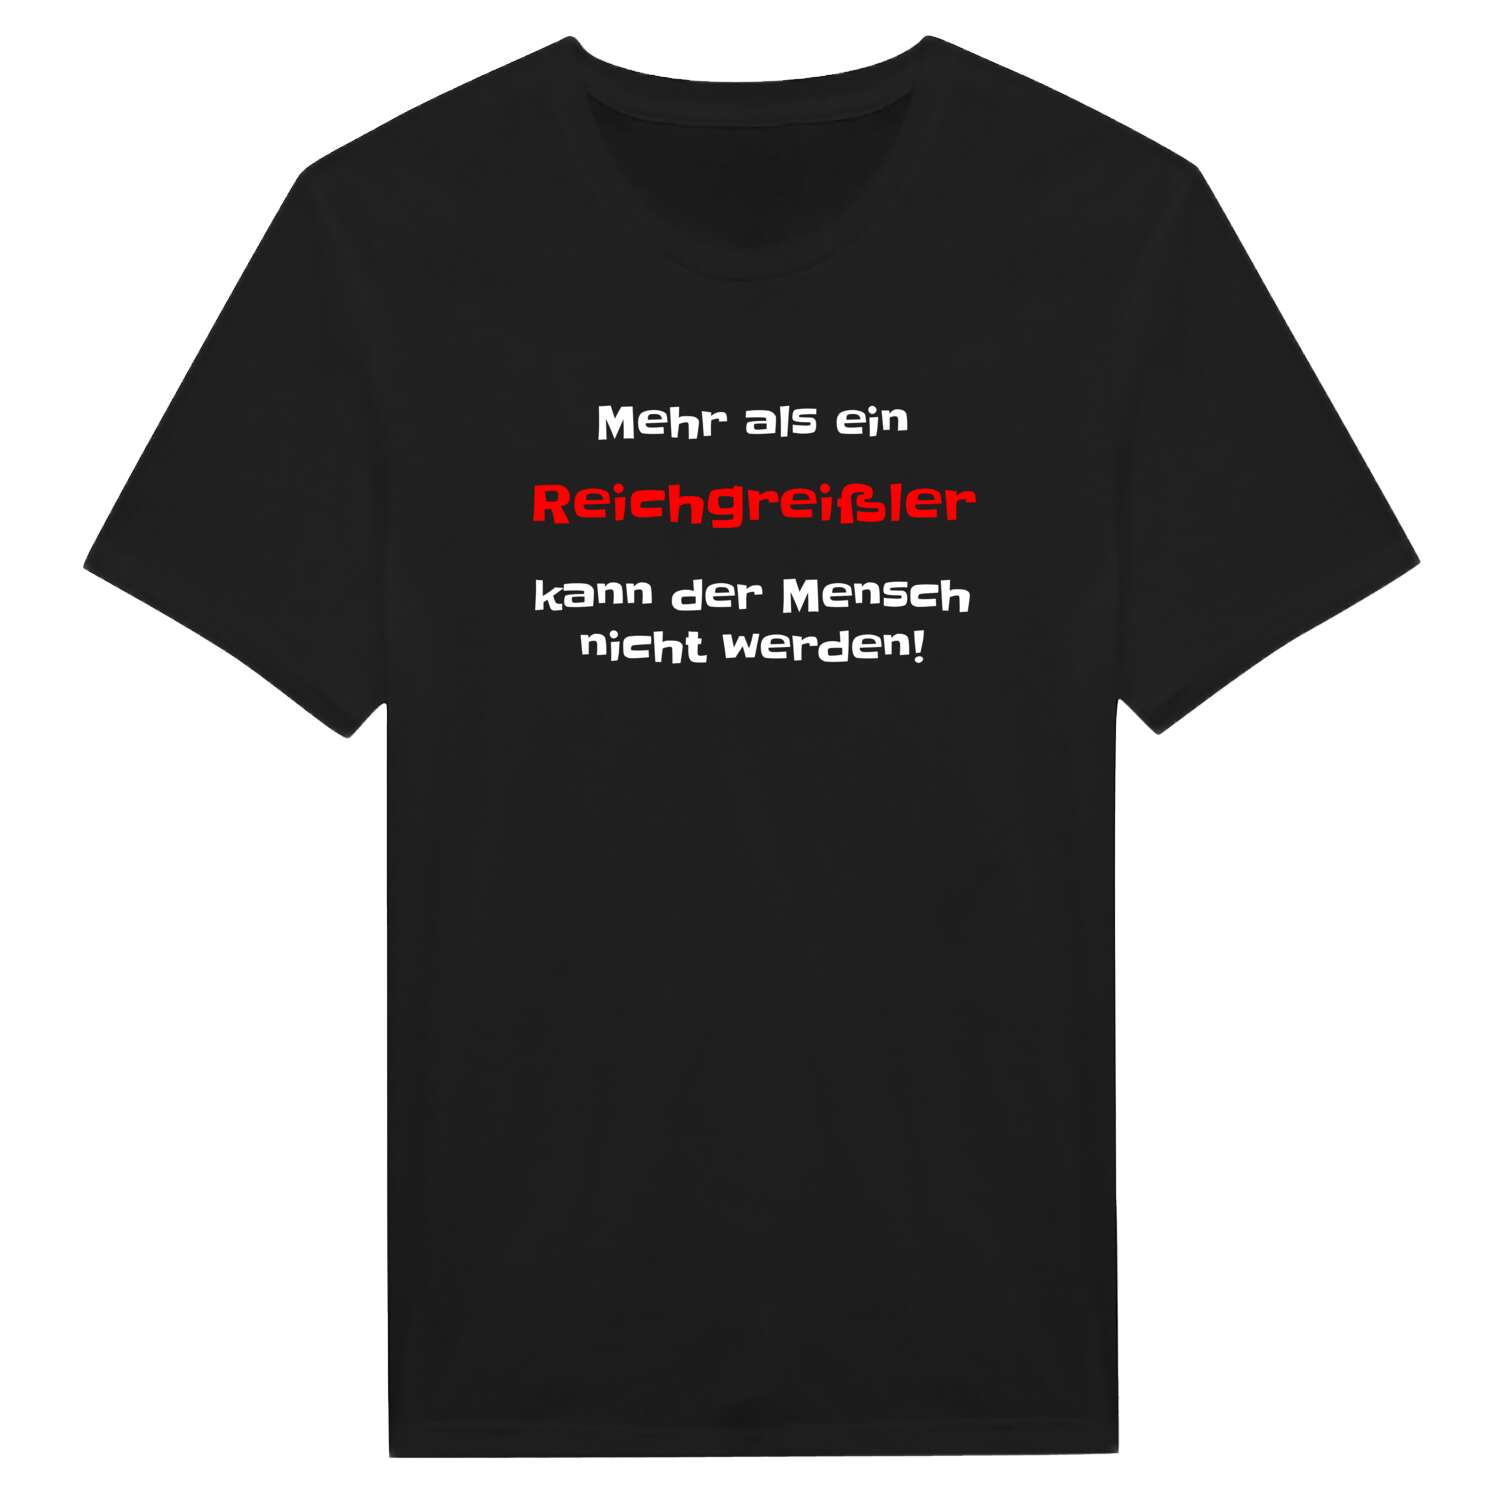 Reichgreißl T-Shirt »Mehr als ein«